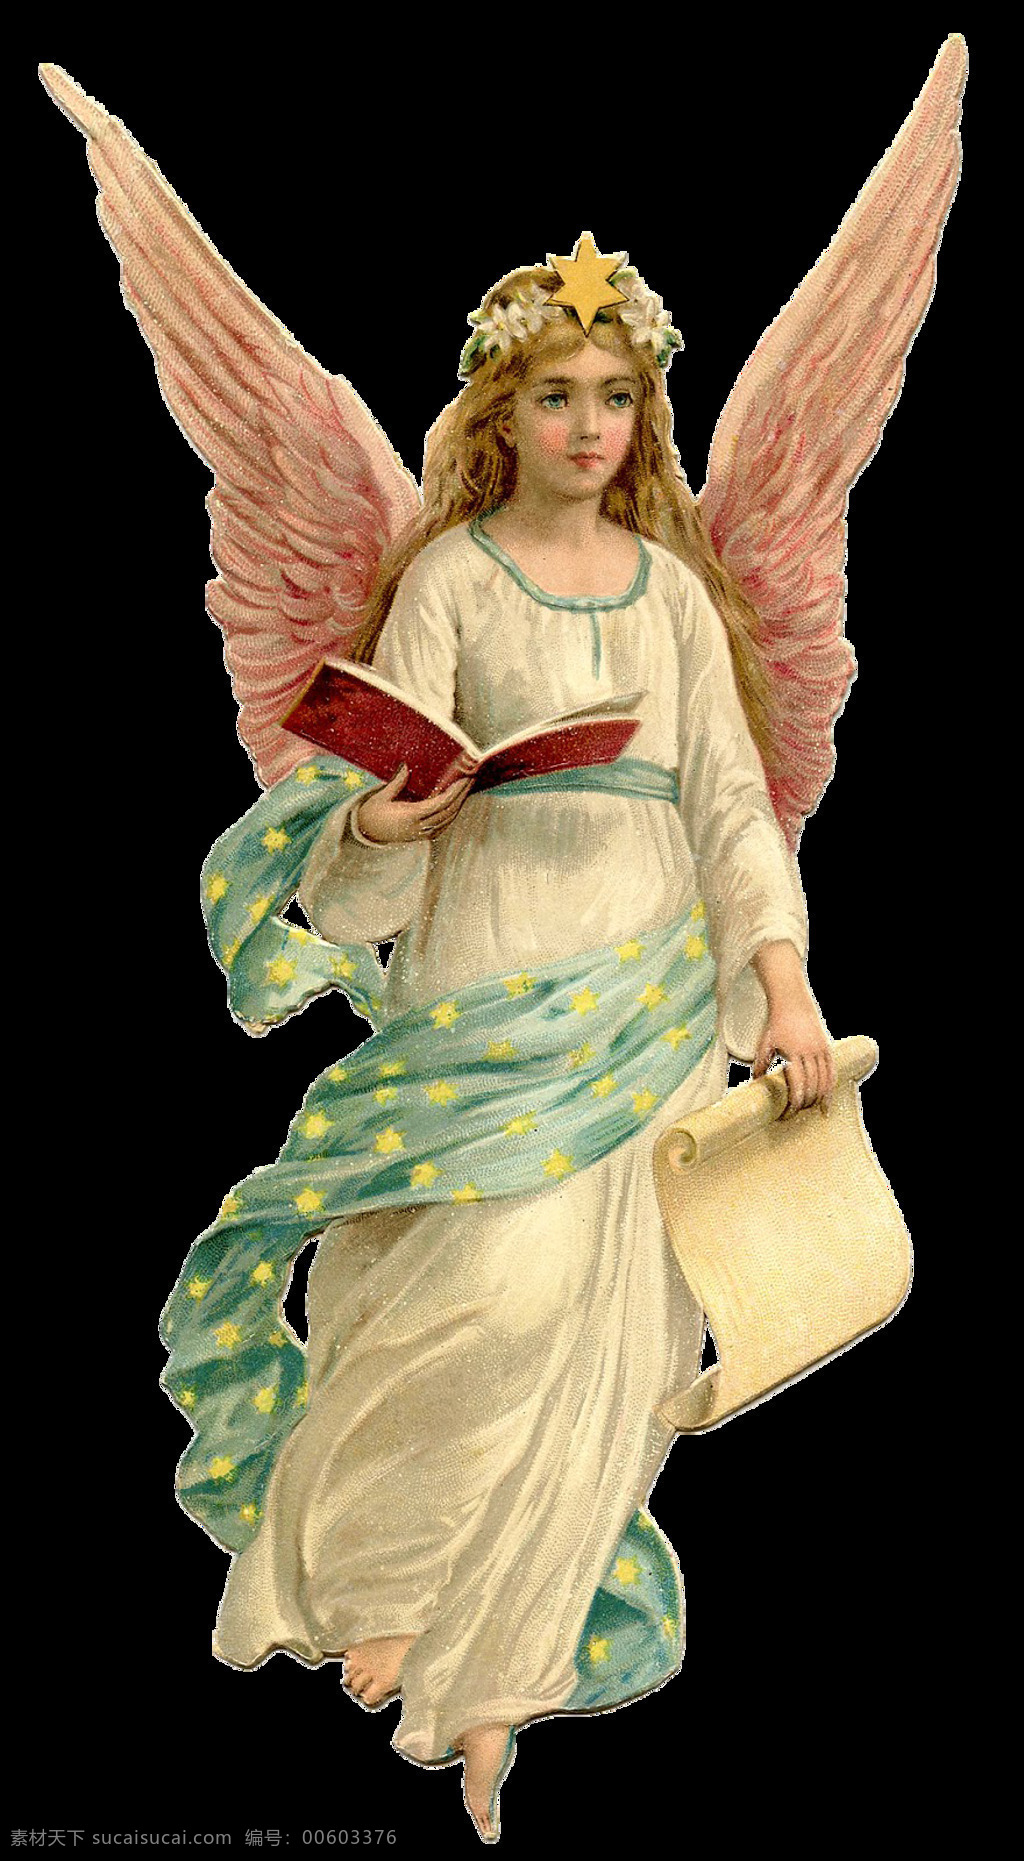 书本 天使 美女 免 抠 透明 堕落天使 唯美 天使之翼 圣经堕落天使 白衣天使图片 唯美天使图片 天使图片素材 天使广告图片 天使海报素材